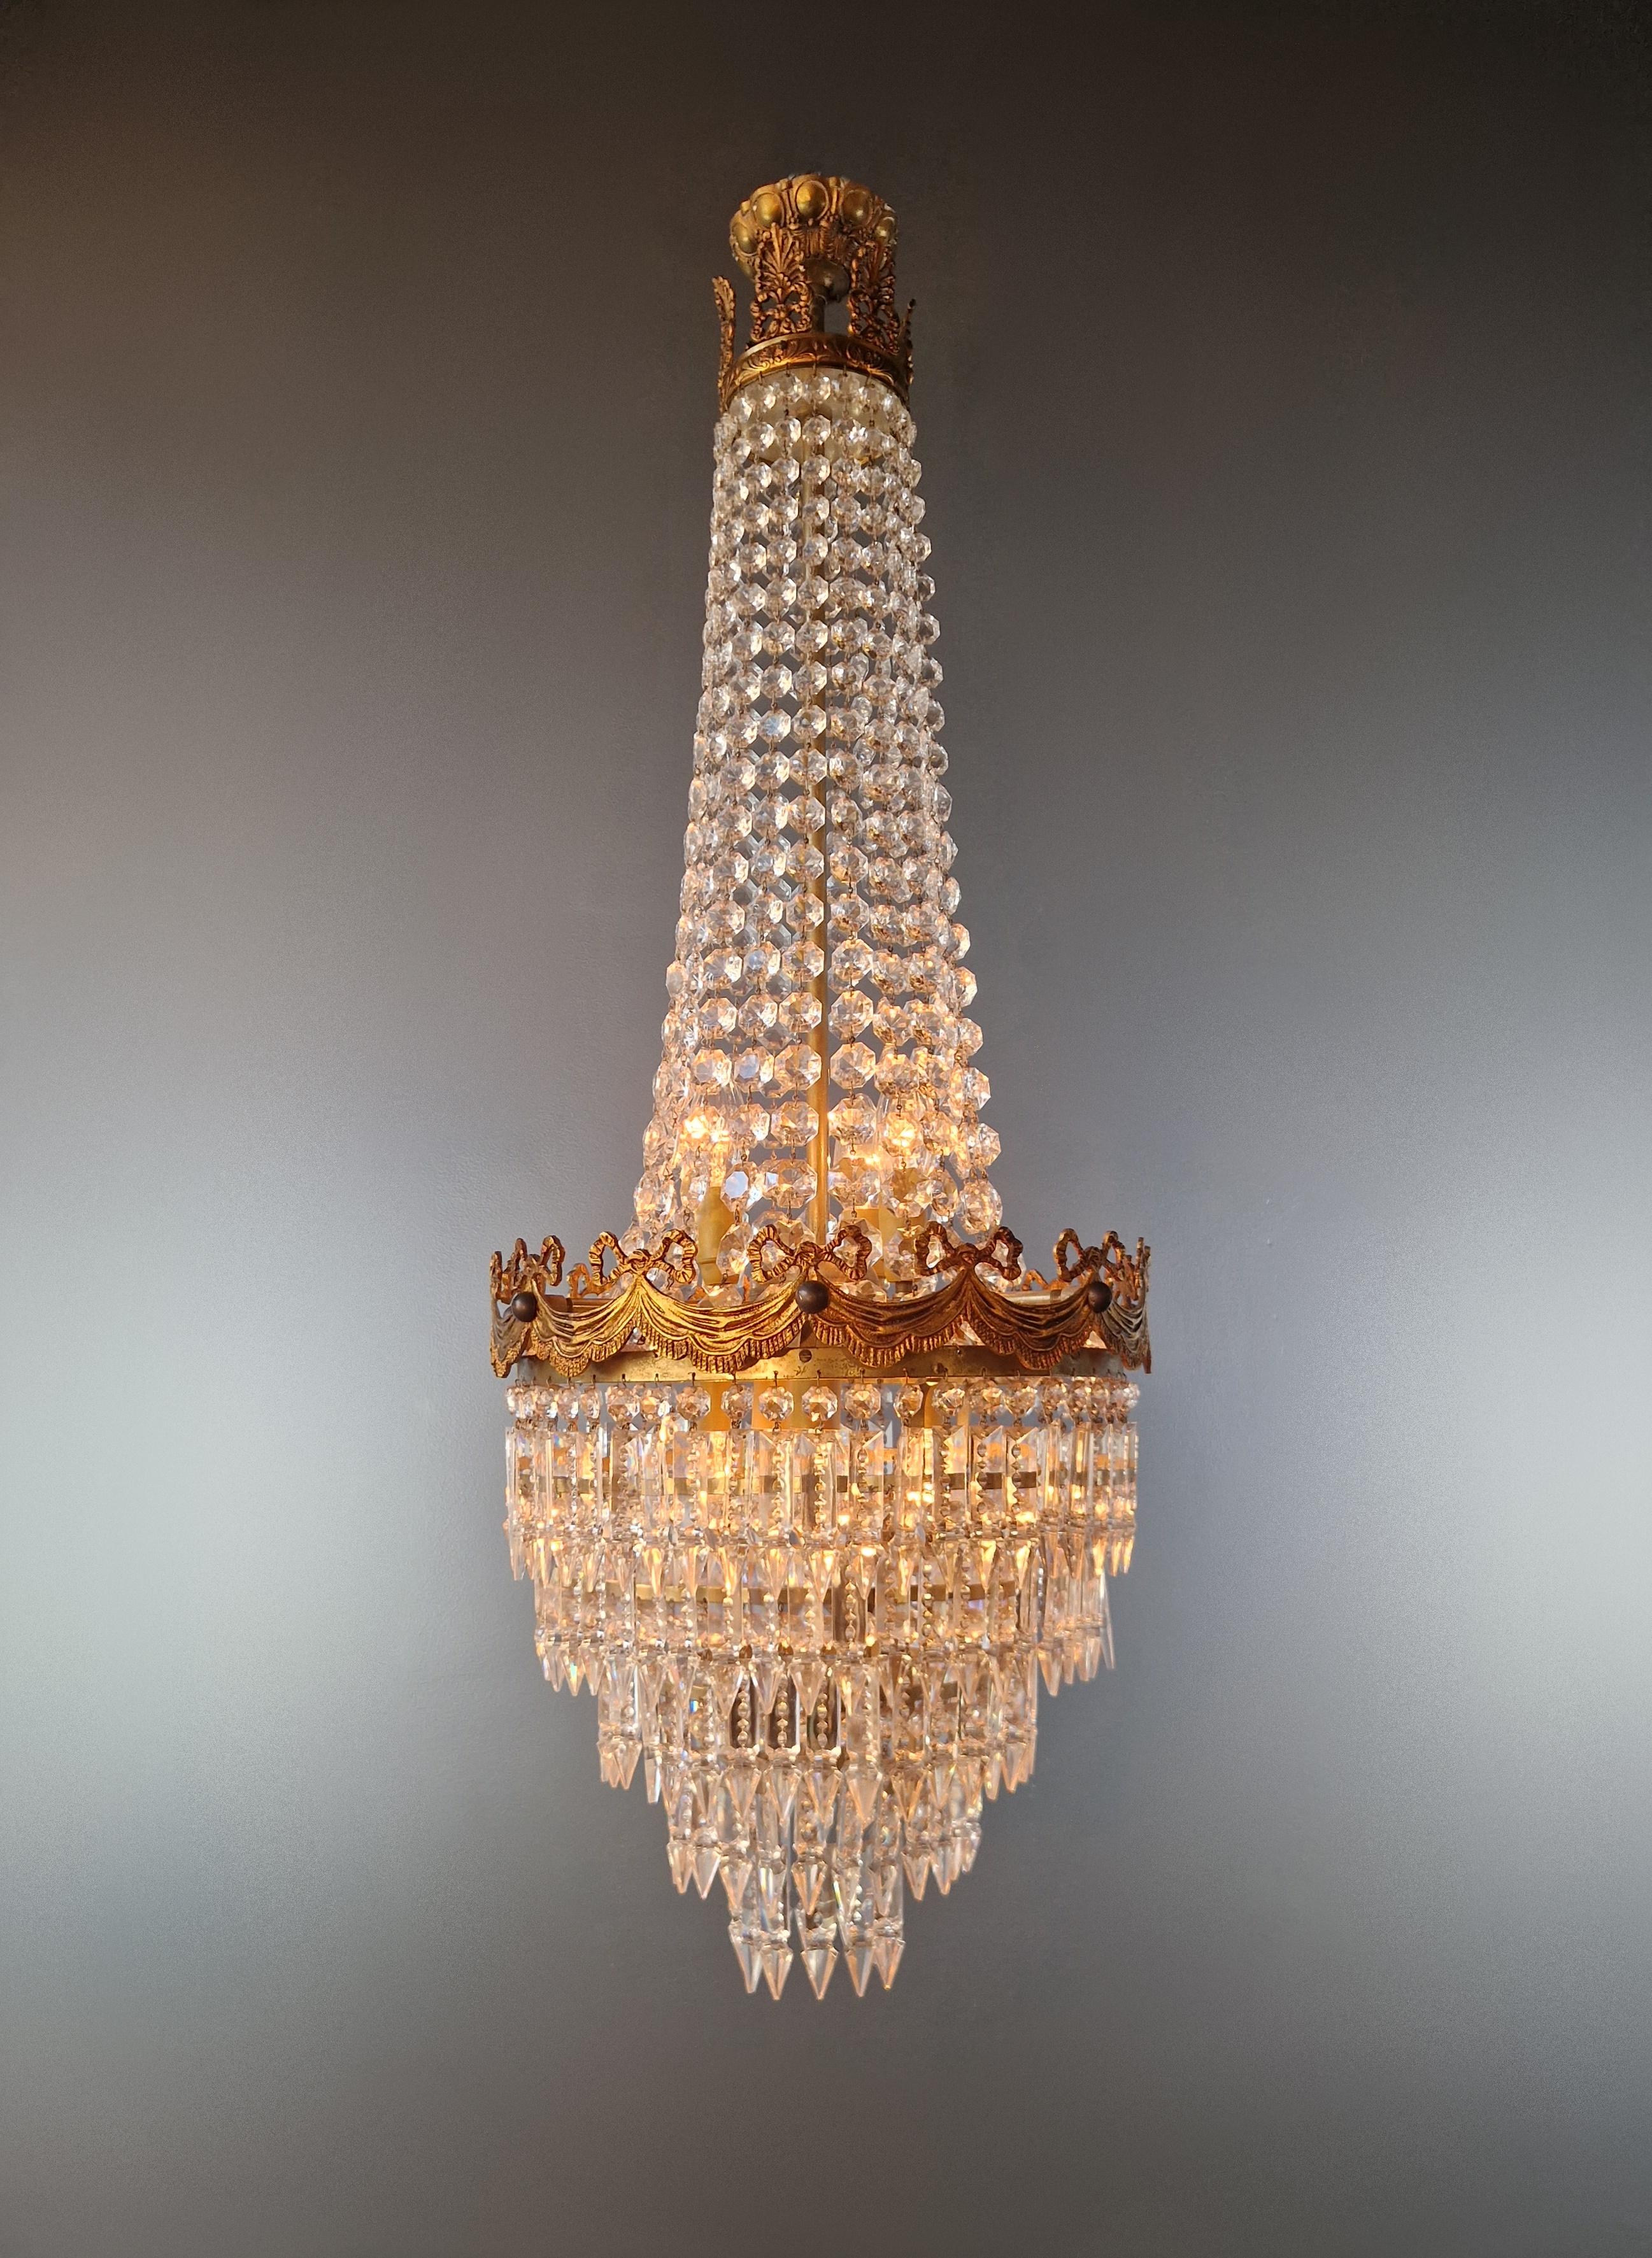 Italian Pair of Antique Crystal Chandelier Ceiling Lamp Lustre Art Nouveau Empire For Sale